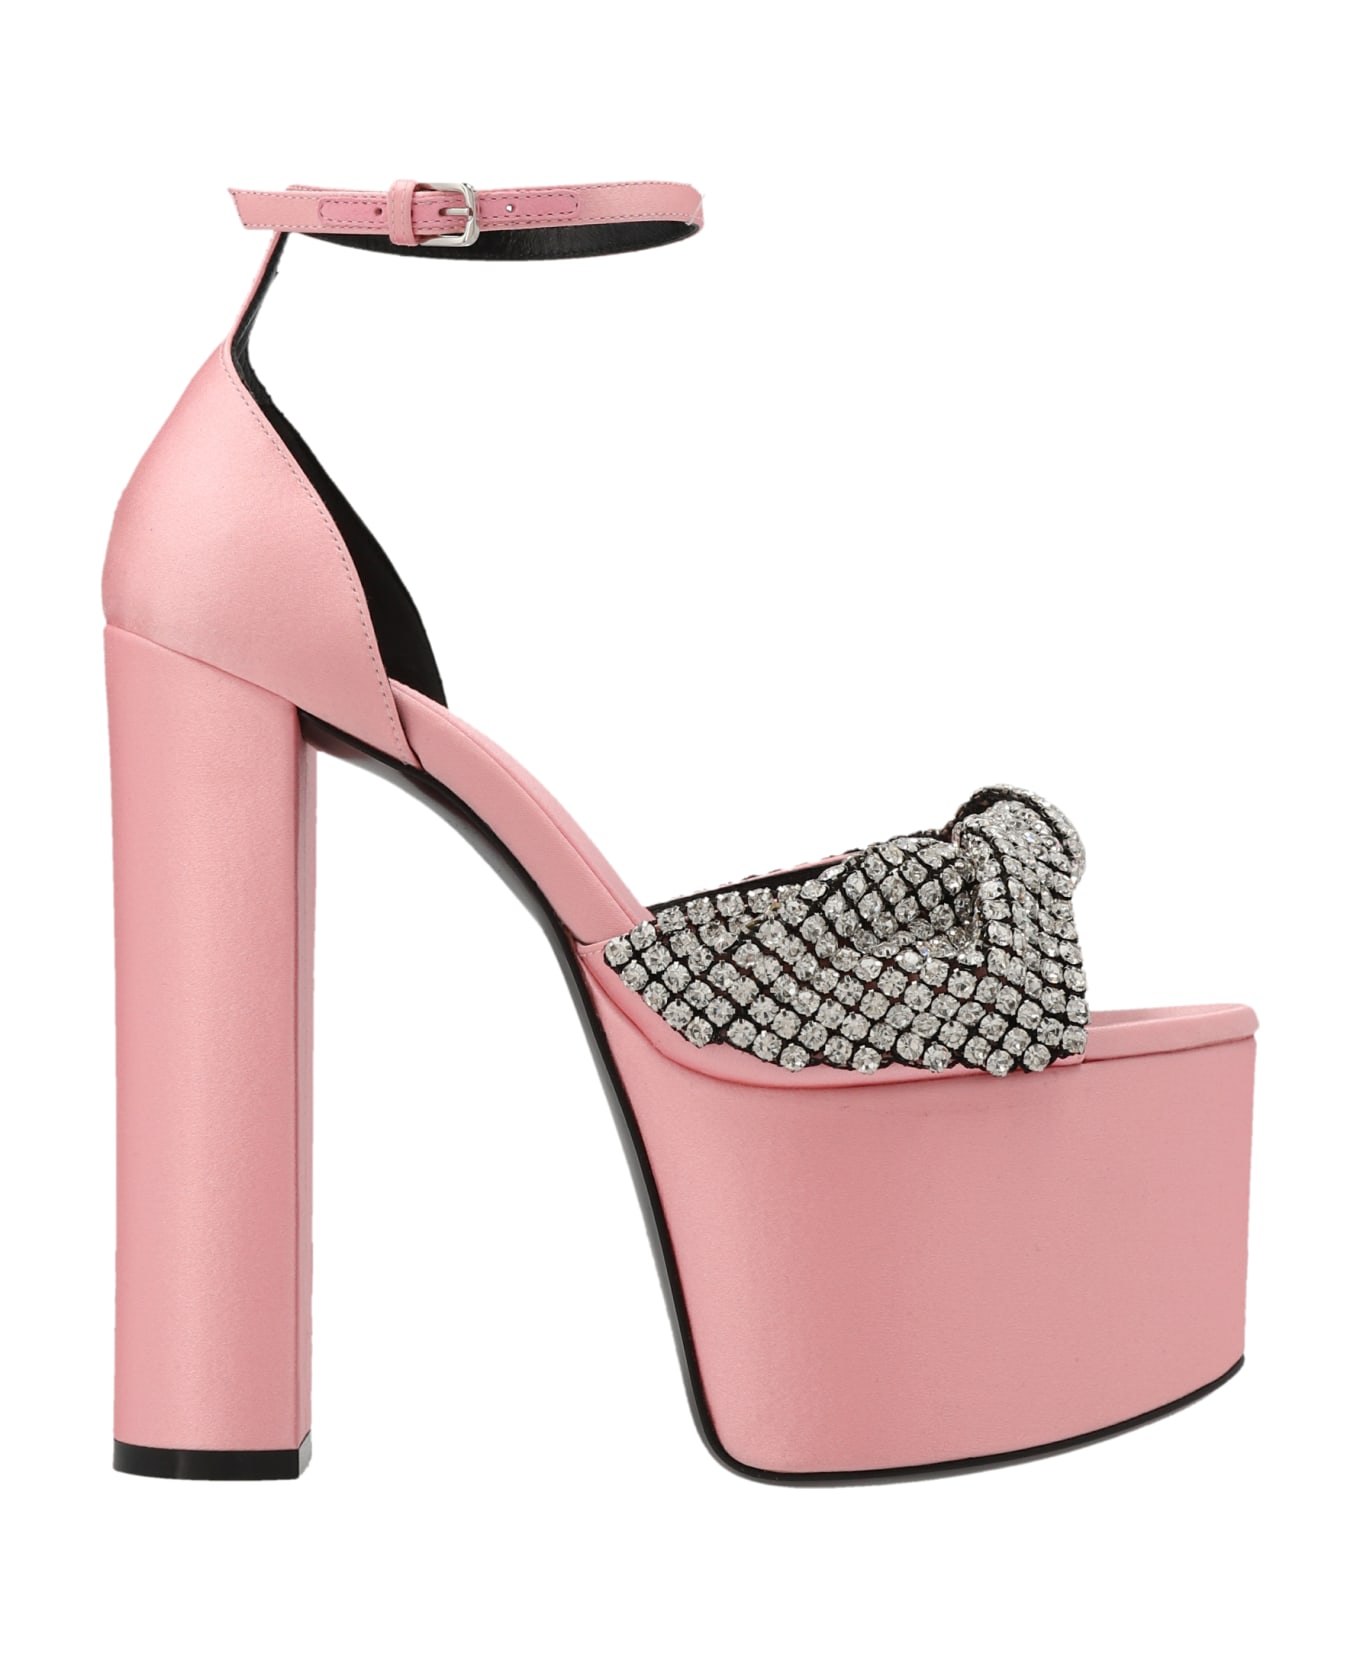 Sergio Rossi 'evangelie' Sandals By Mr. Patentie Rossi X Evangelie Smyrniotaki - Pink